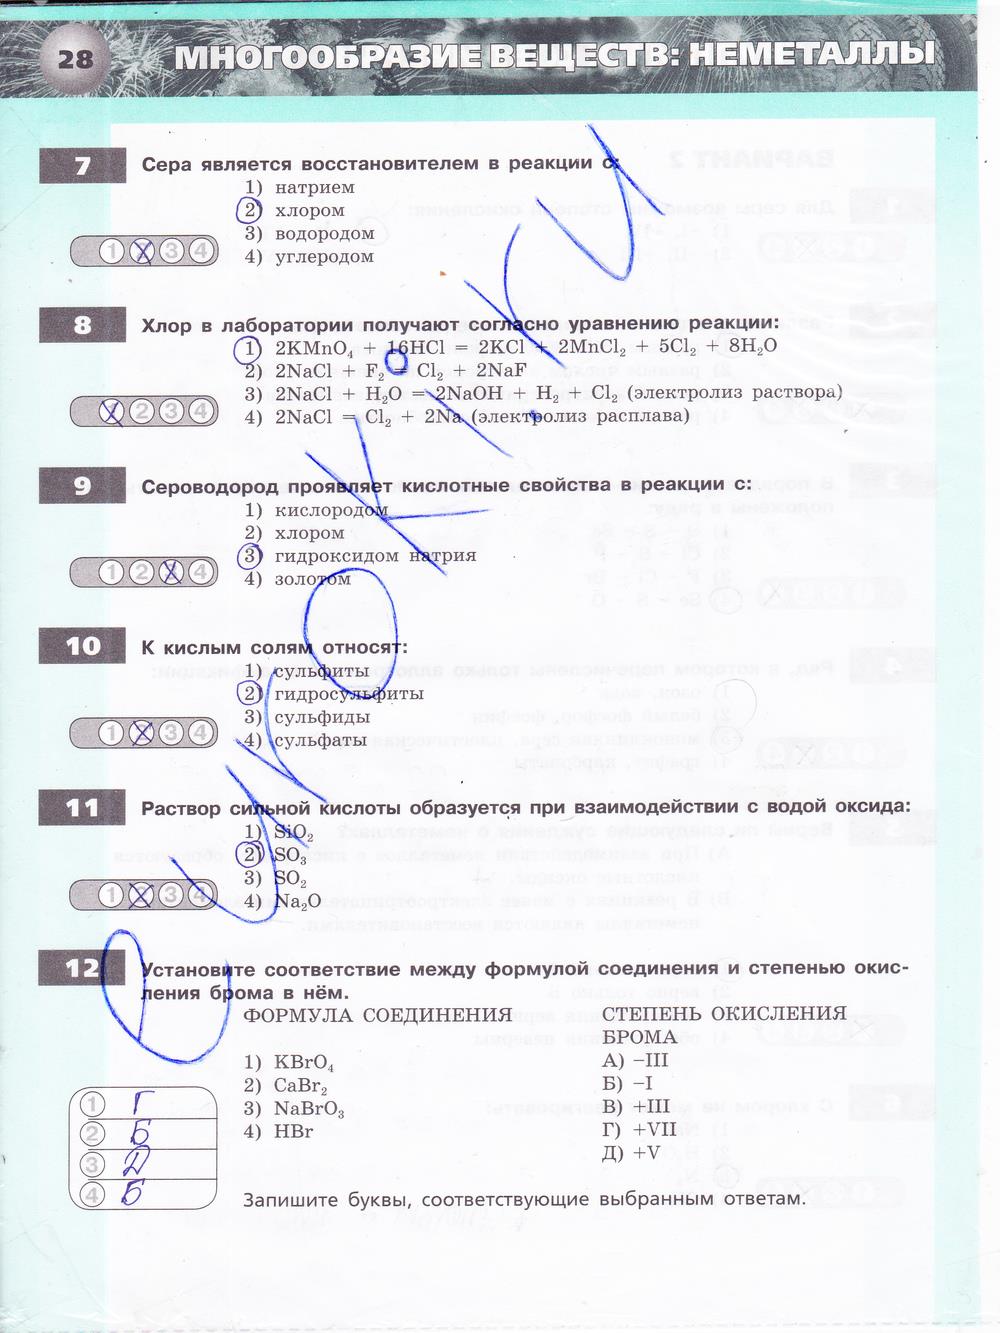 гдз 9 класс тетрадь-экзаменатор страница 28 химия Бобылева, Бирюлина